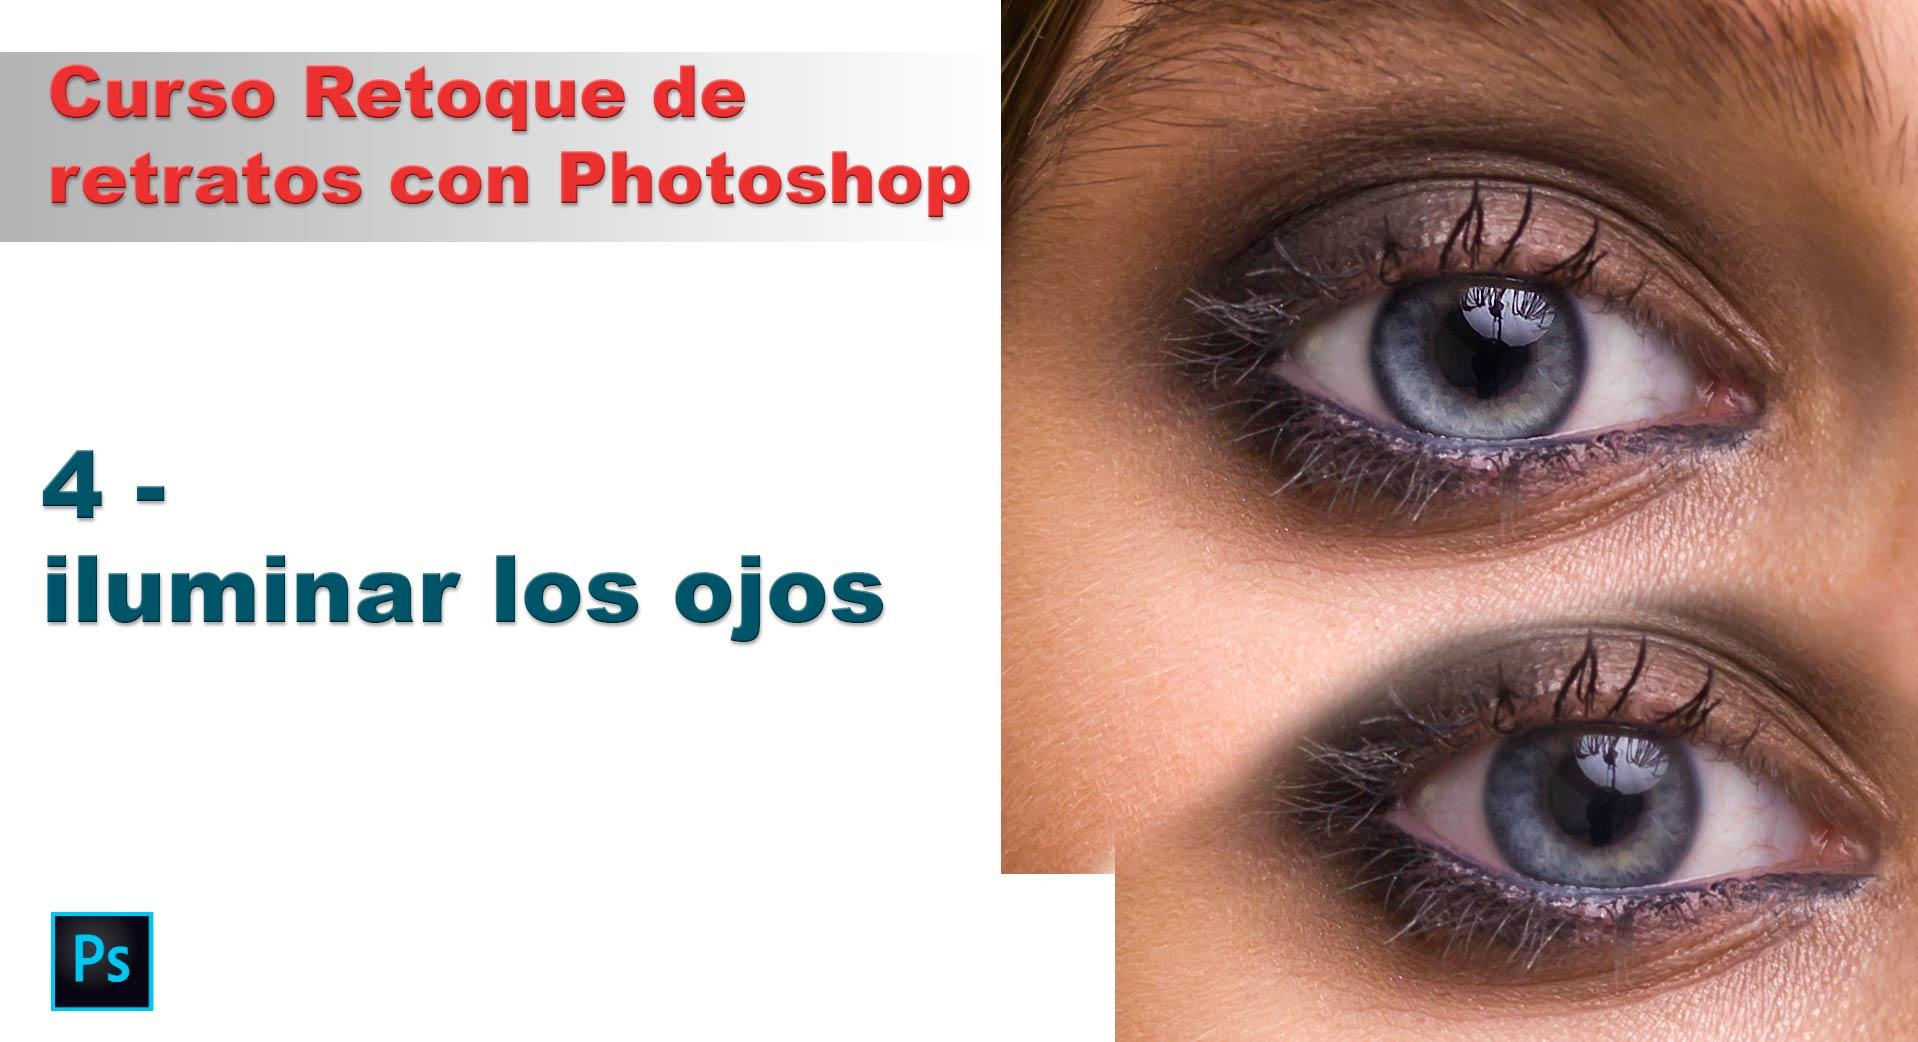 4 Curso Retoque Retratos con Photoshop - Cómo retocar ojos y darle luz al  iris | Fotografo digital y tutoriales Photoshop